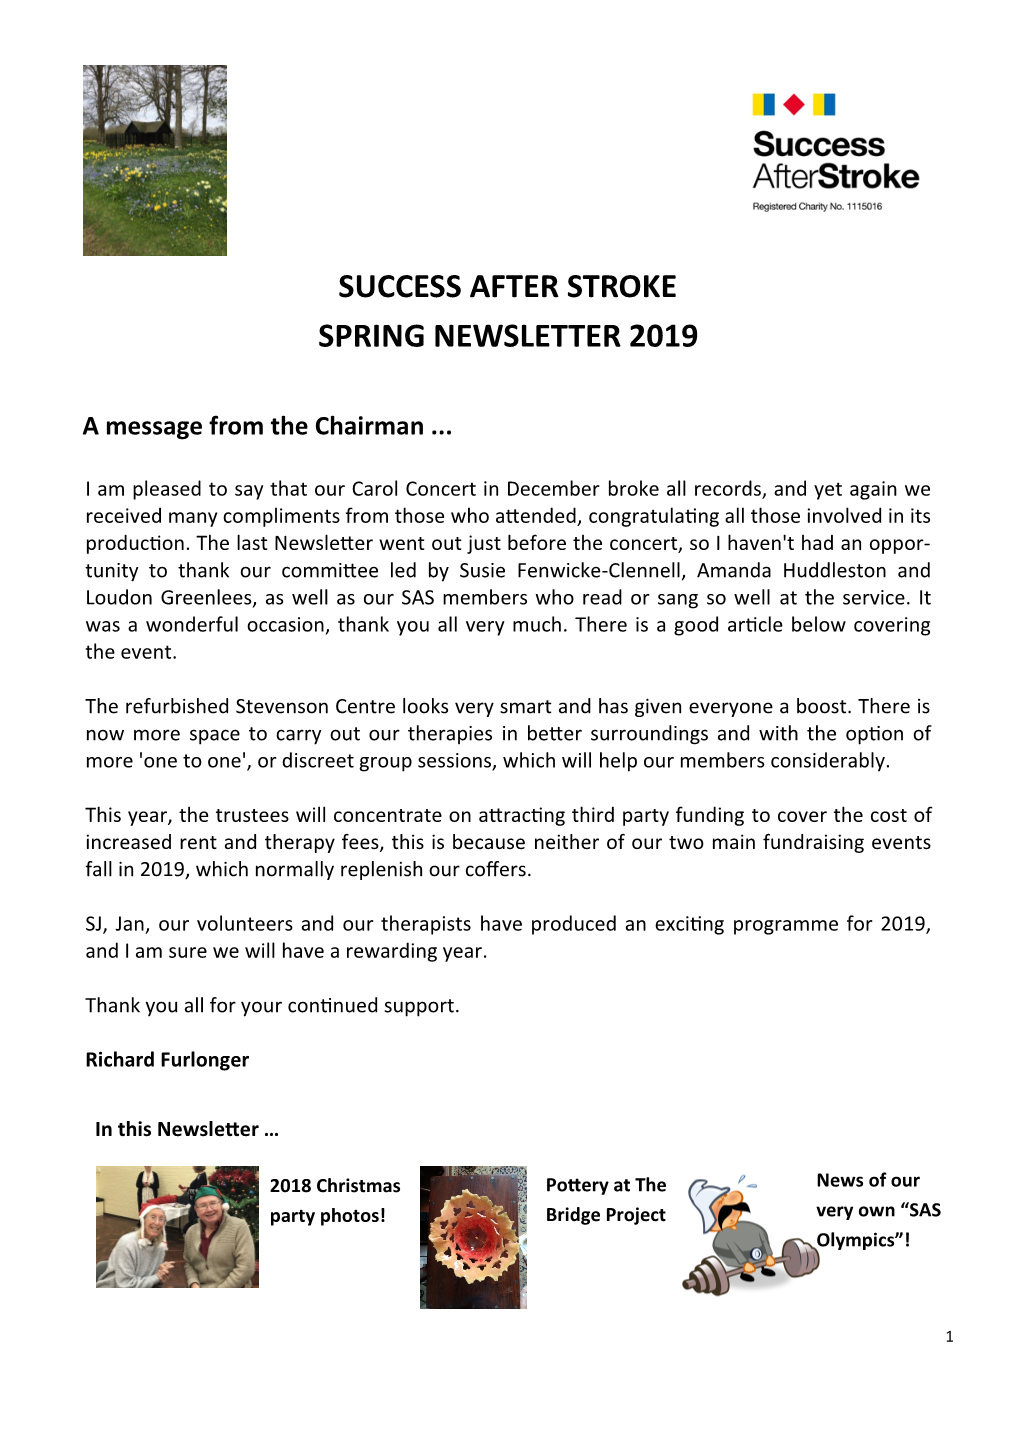 Success After Stroke Spring Newsletter 2019